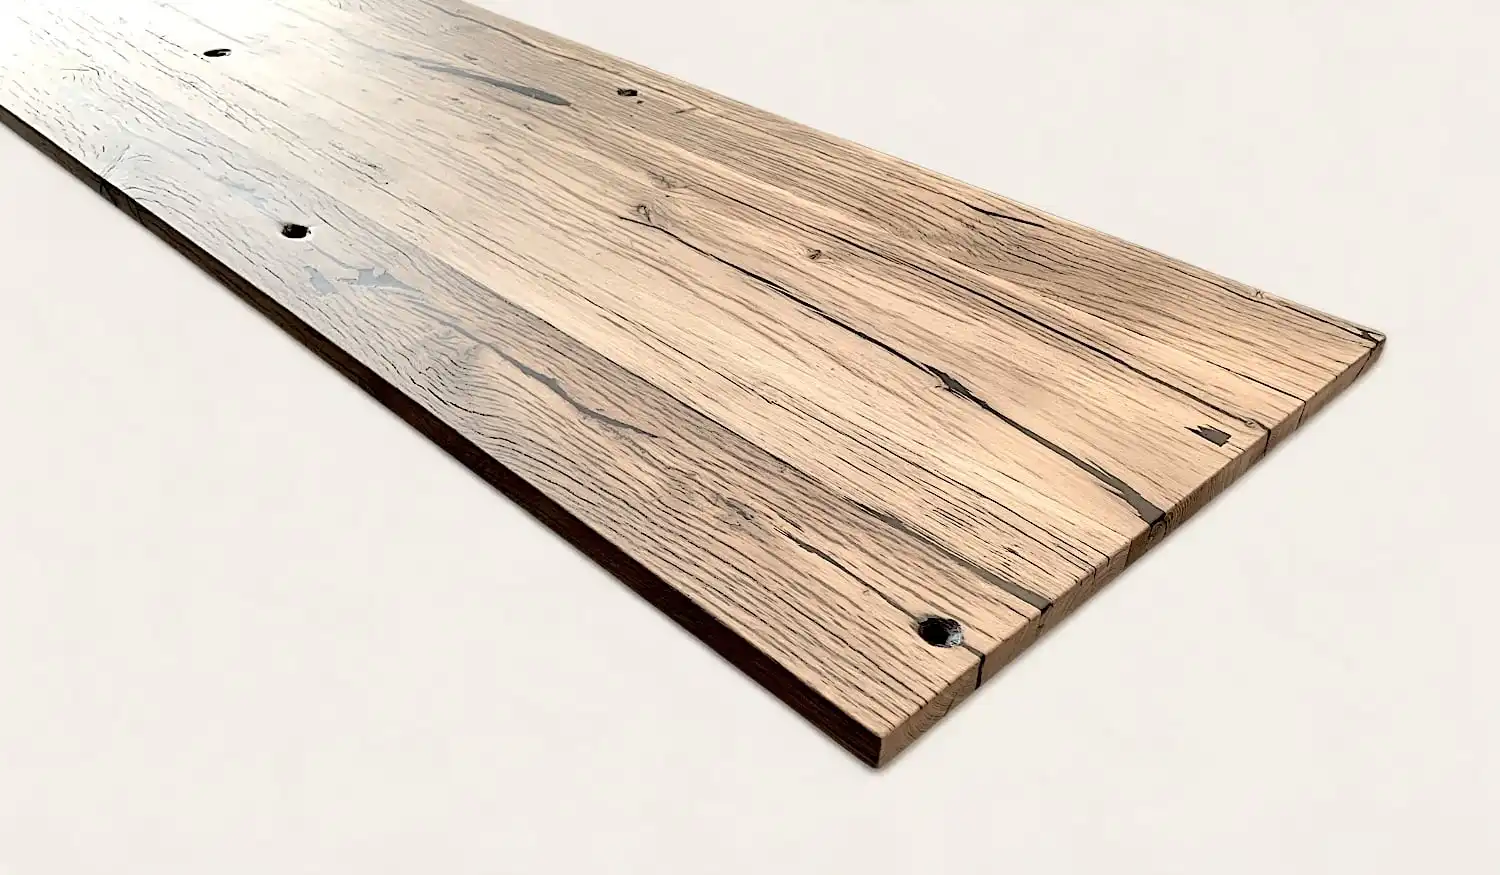 Une planche de bois rustique sur une surface blanche.